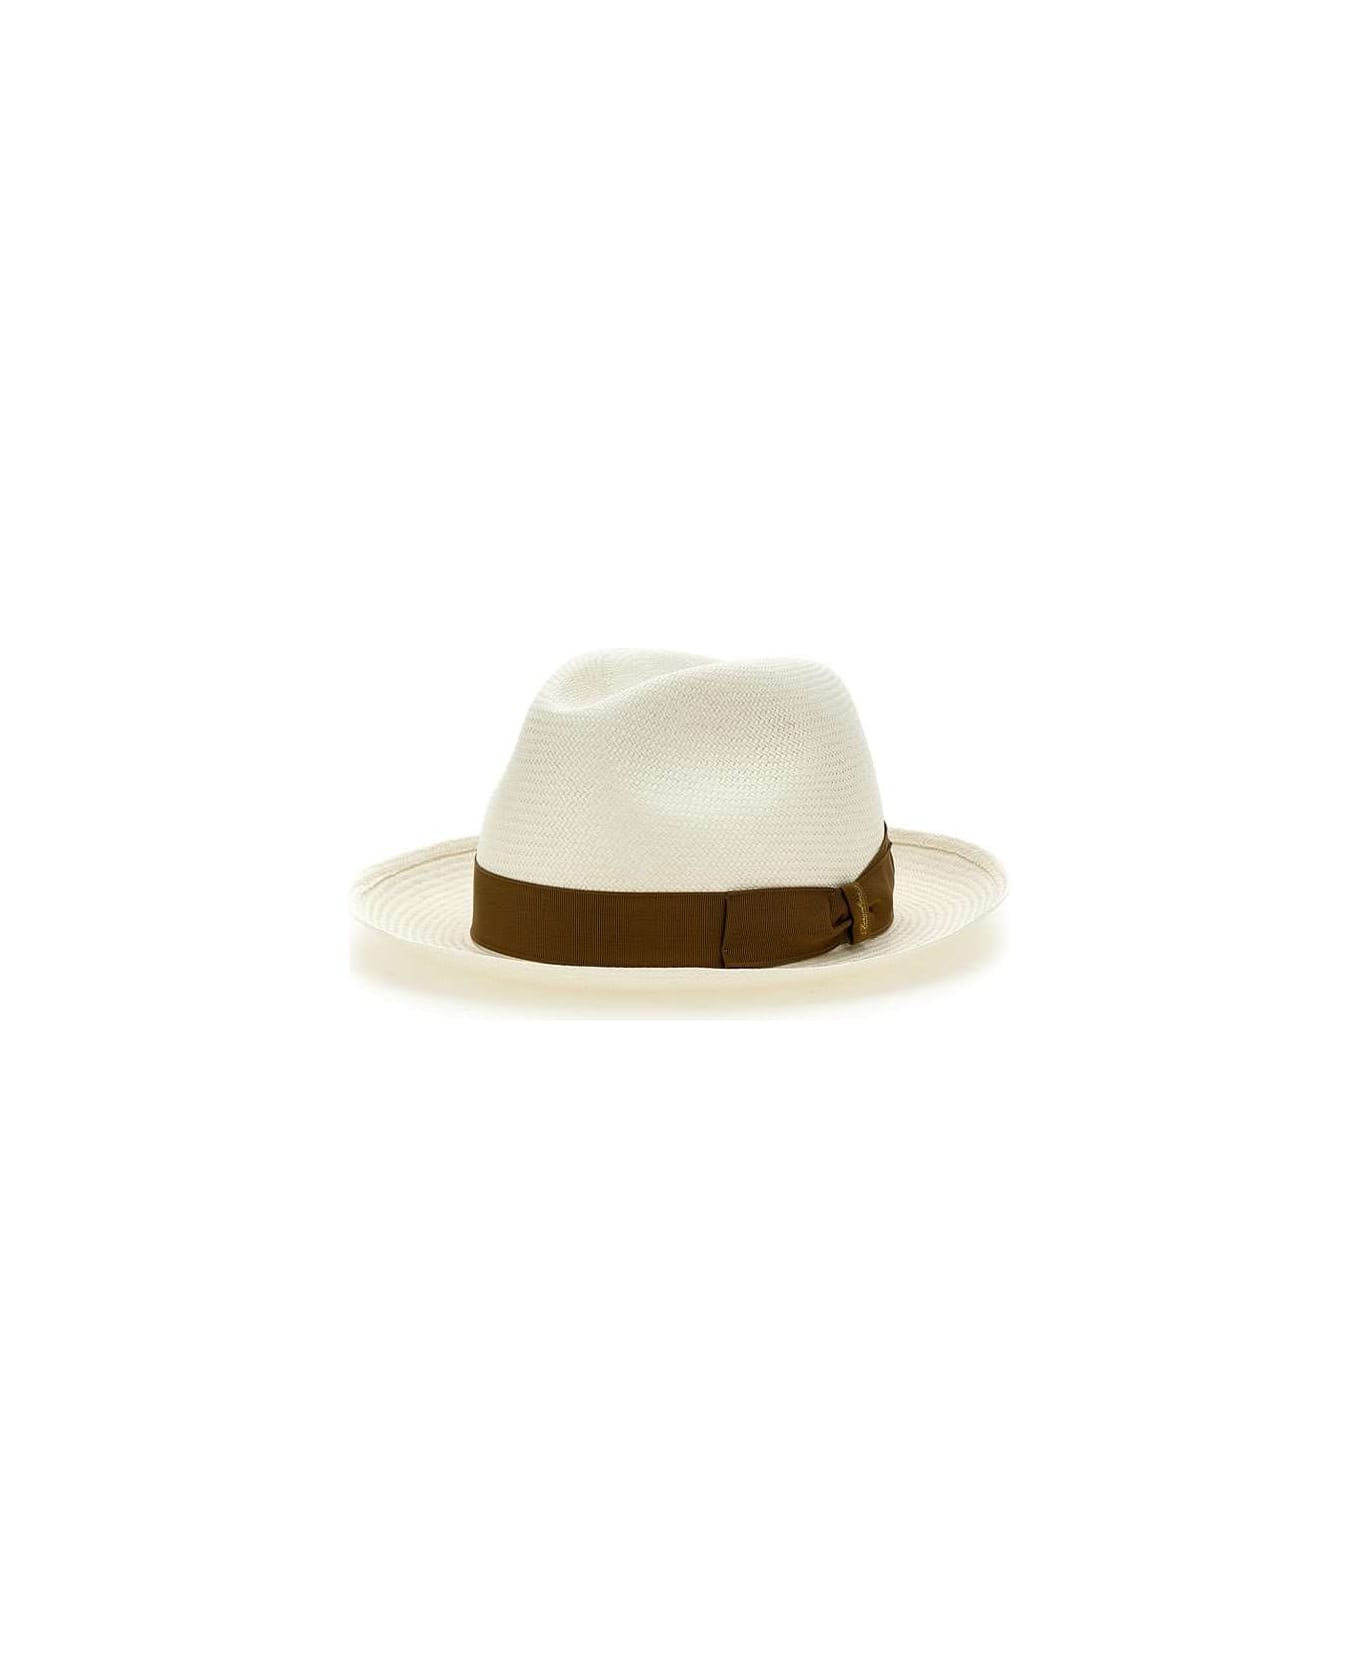 Borsalino "panama" Straw Hat - WHITE